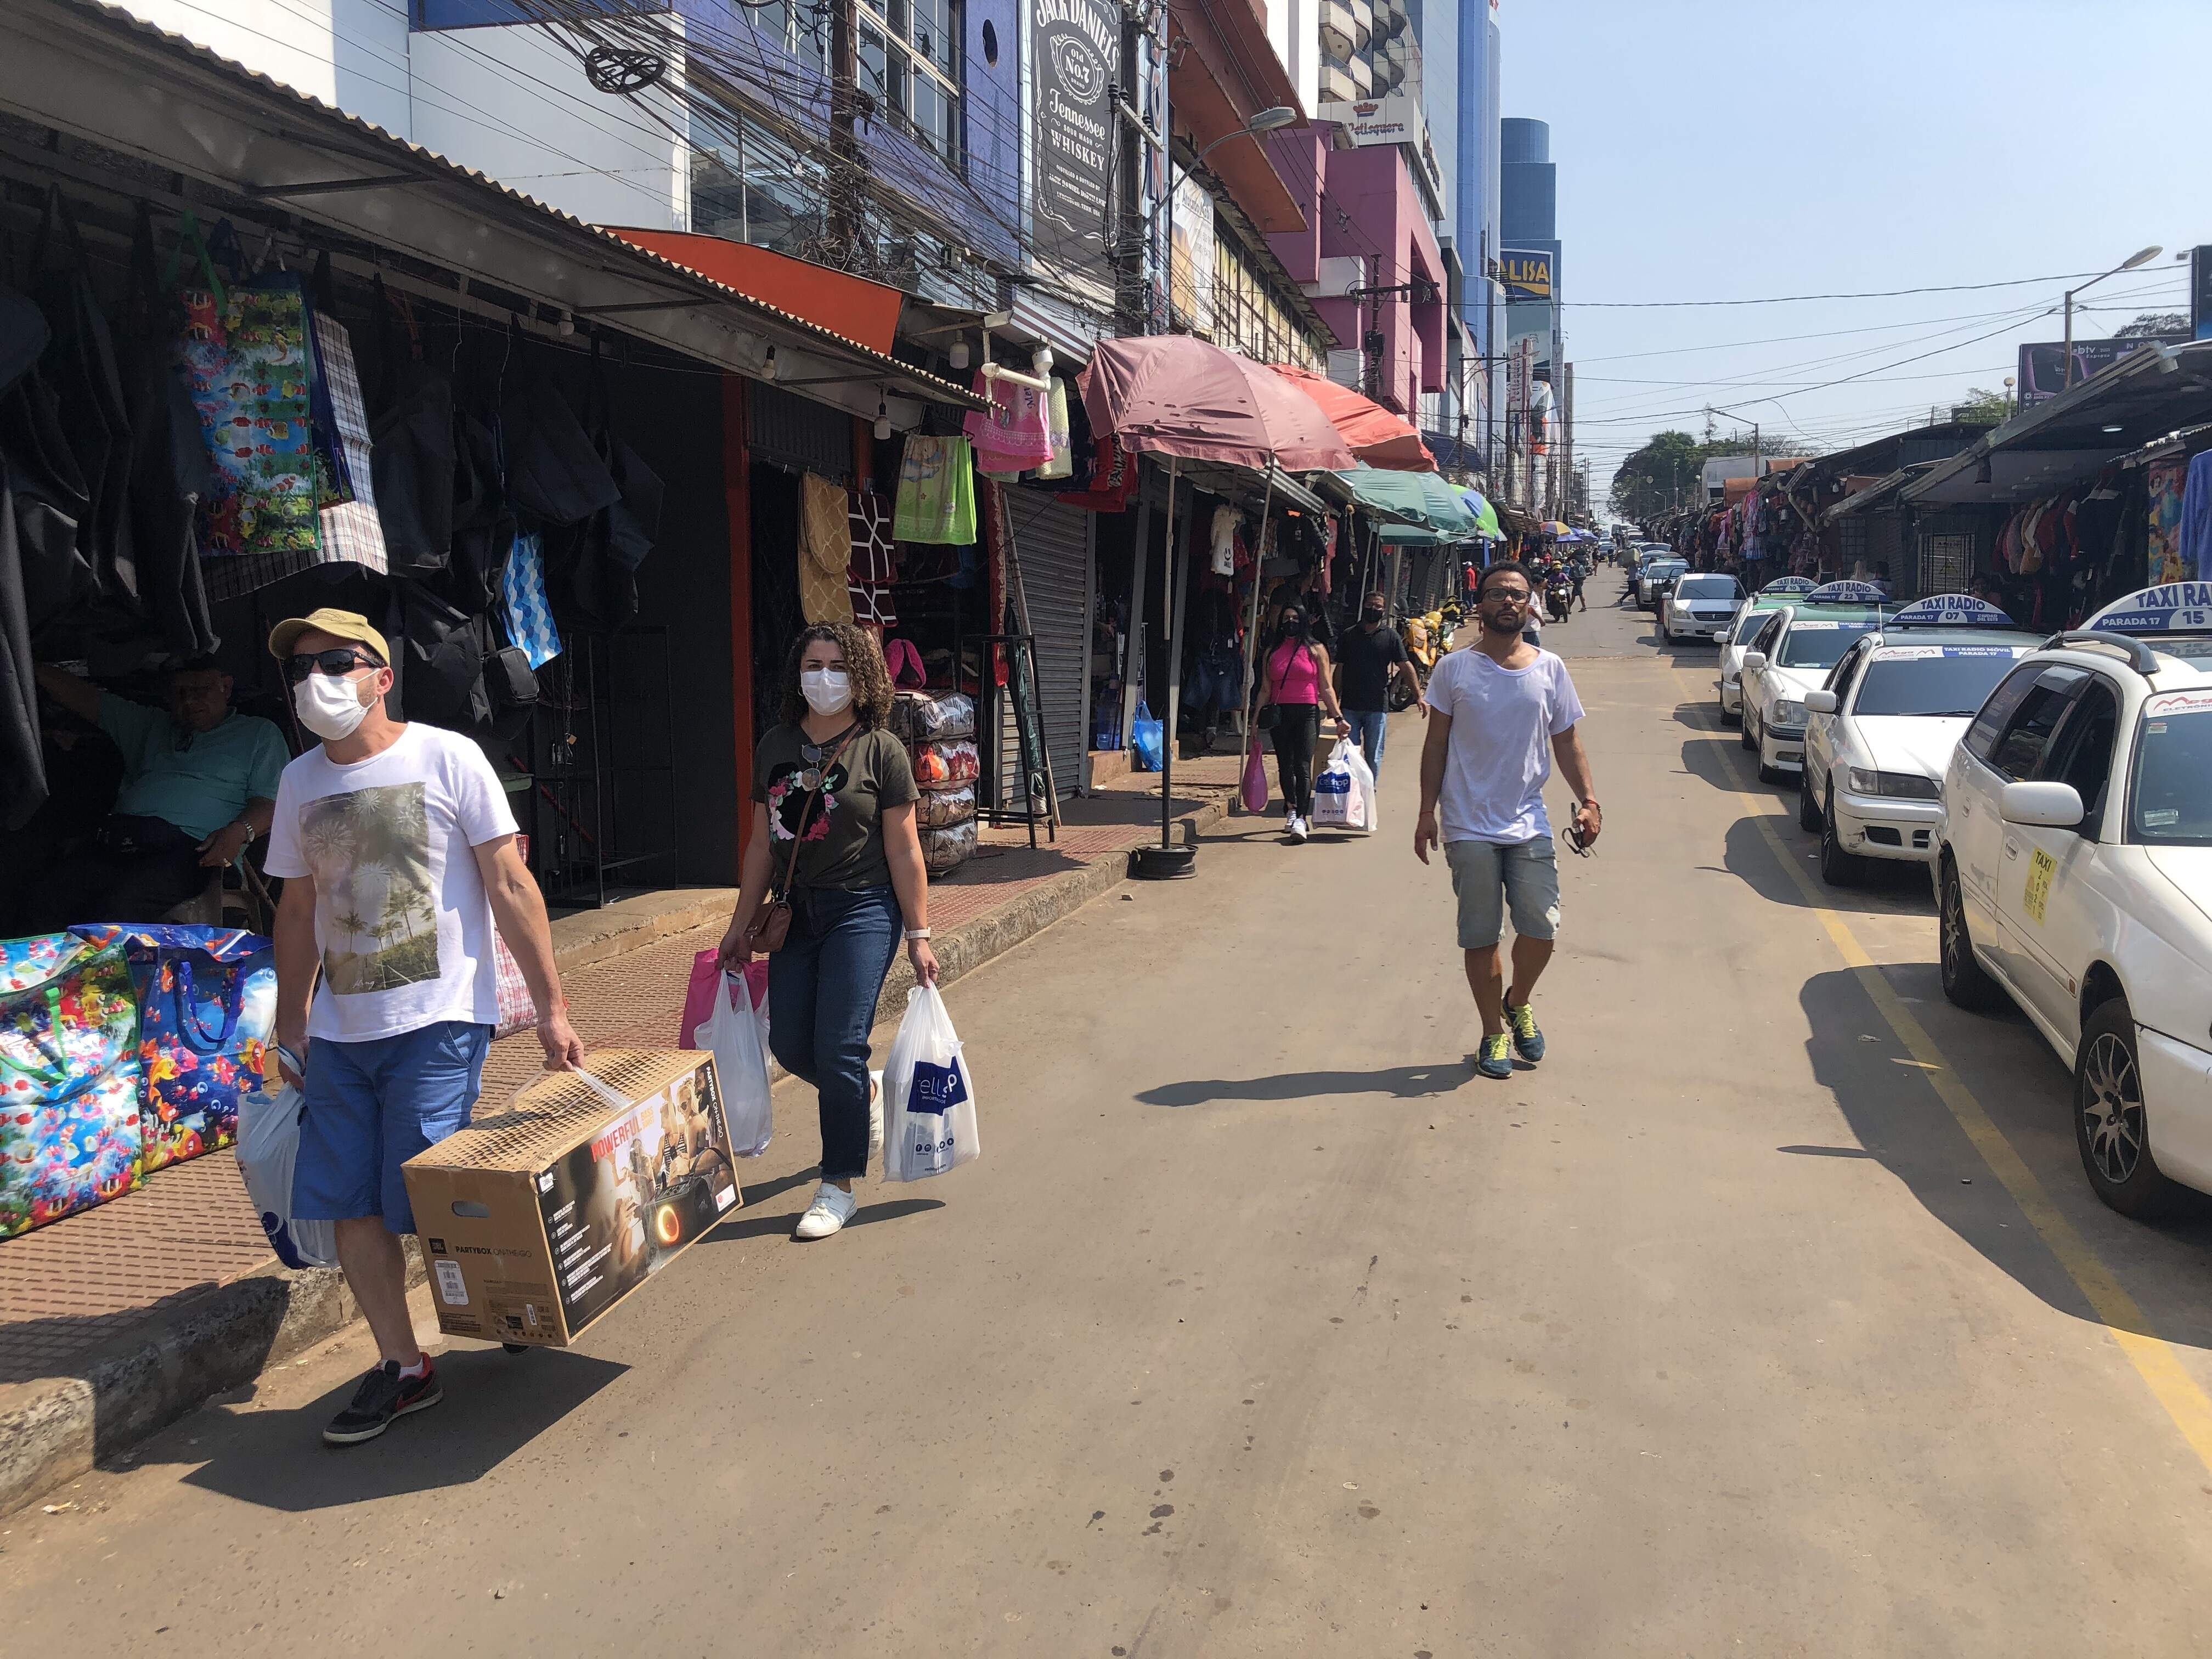 Los turistas compradores caminan por la calle del microcentro esteño, debido a la falta de espacio para paseos peatonales.